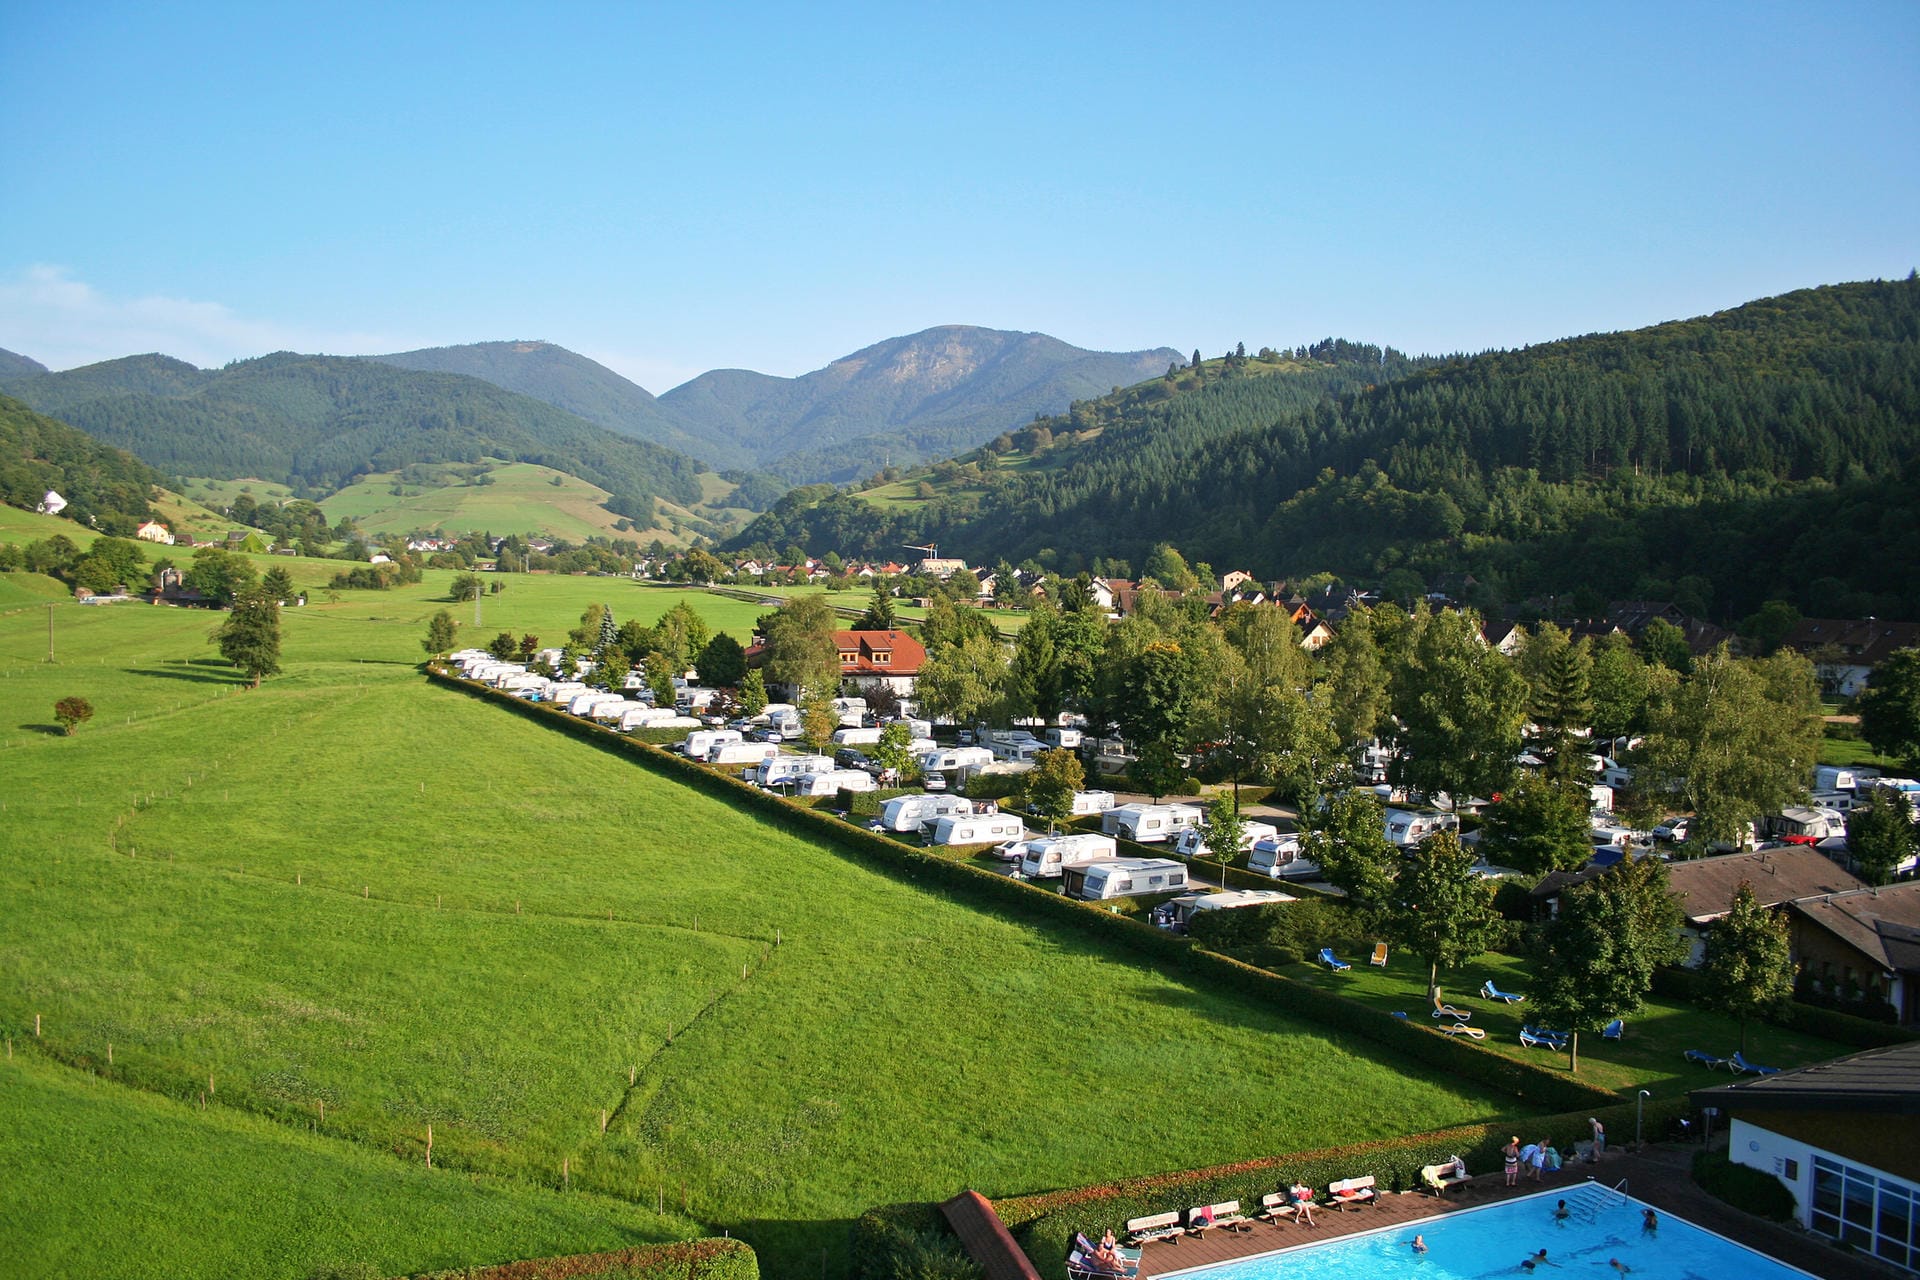 Camping für Aktive bietet das Camping Münstertal im Schwarzwald. Der ADAC bewertete den Platz seit 1983 in seinen Campingführern mit der Bestnote.